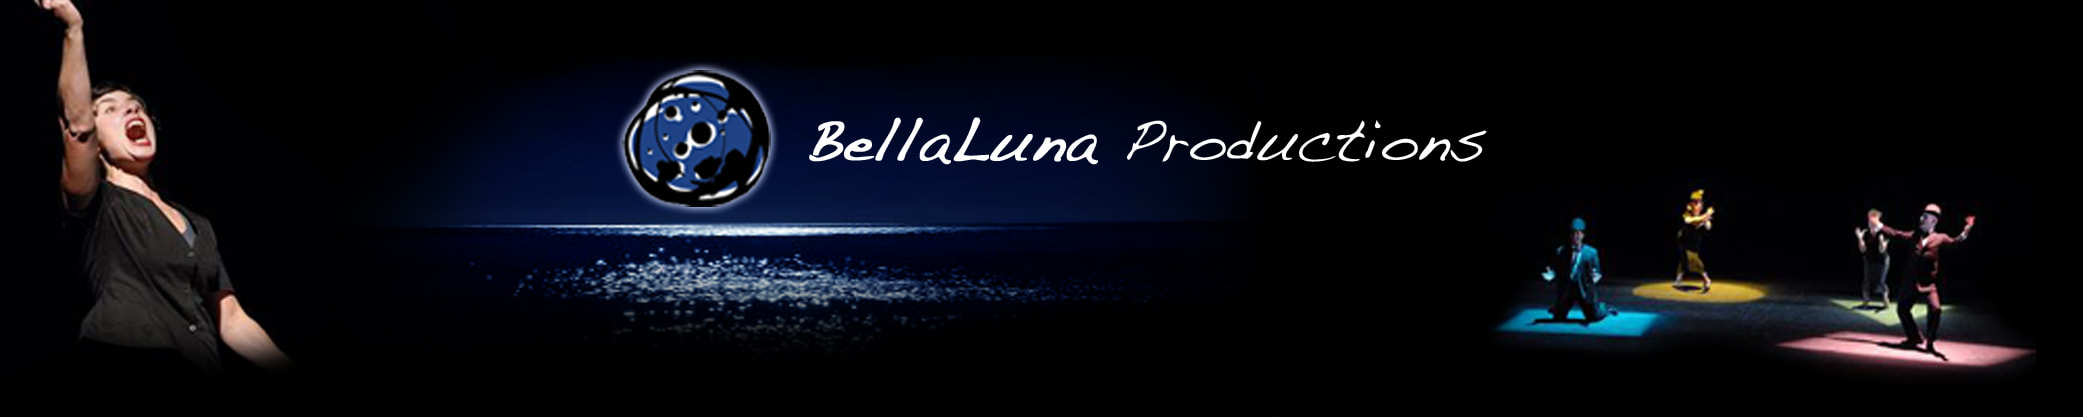 BellaLuna Productions